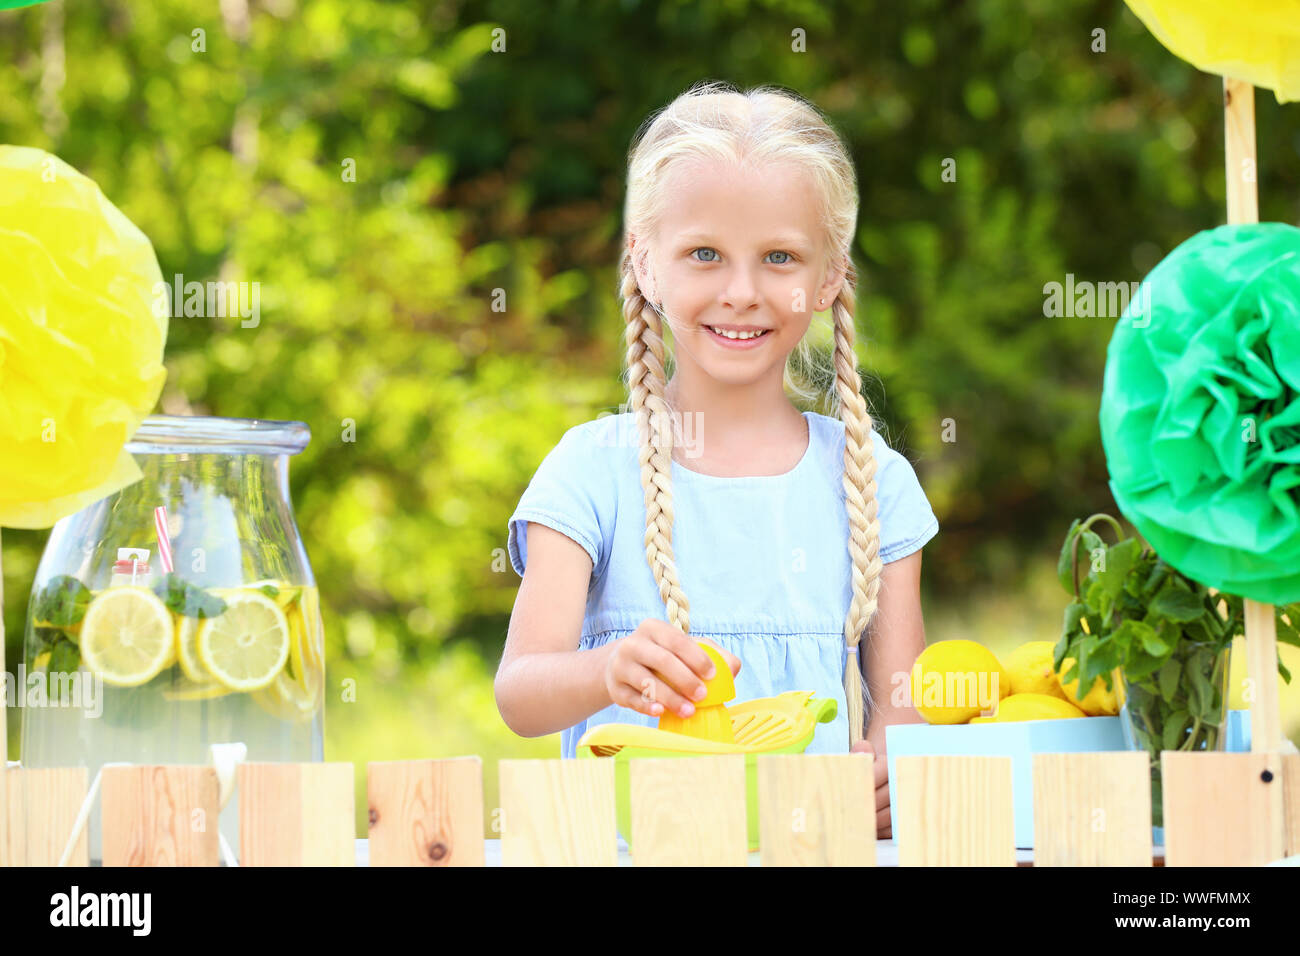 Cute little girl selling lemonade in park Stock Photo